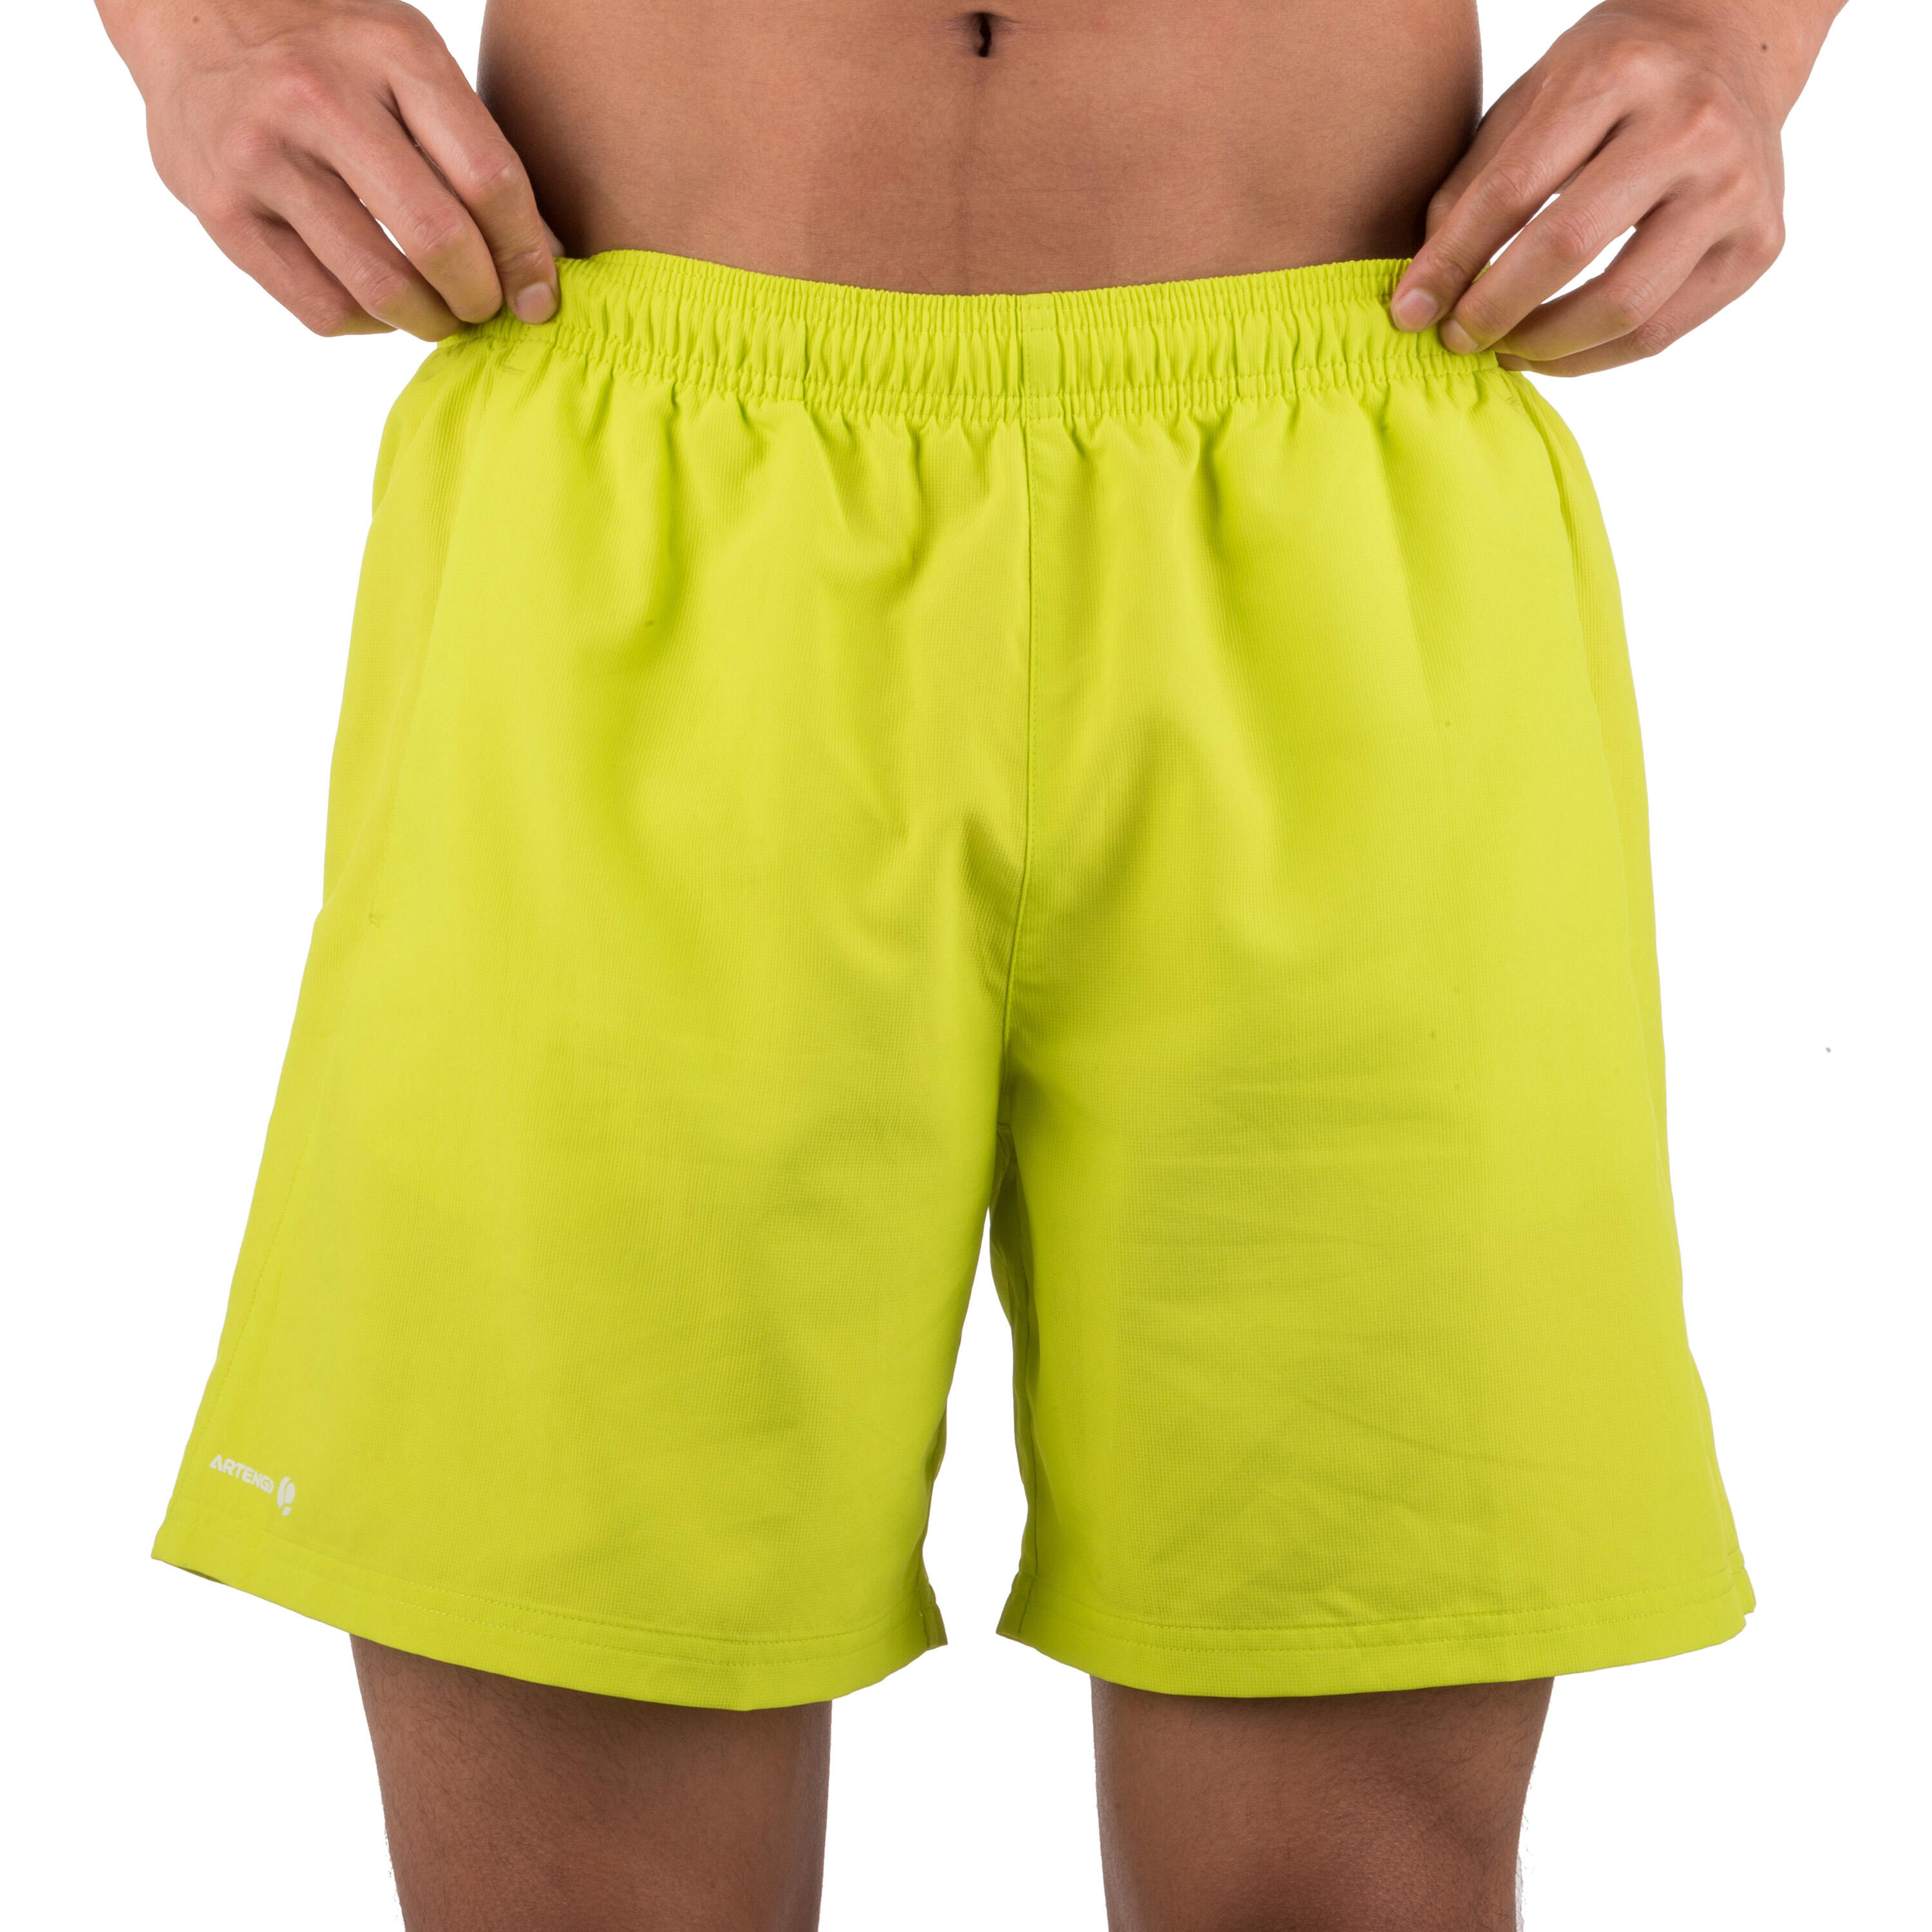 Essential 100 Padel Tennis Badminton Squash Table Tennis Shorts - Yellow 3/7